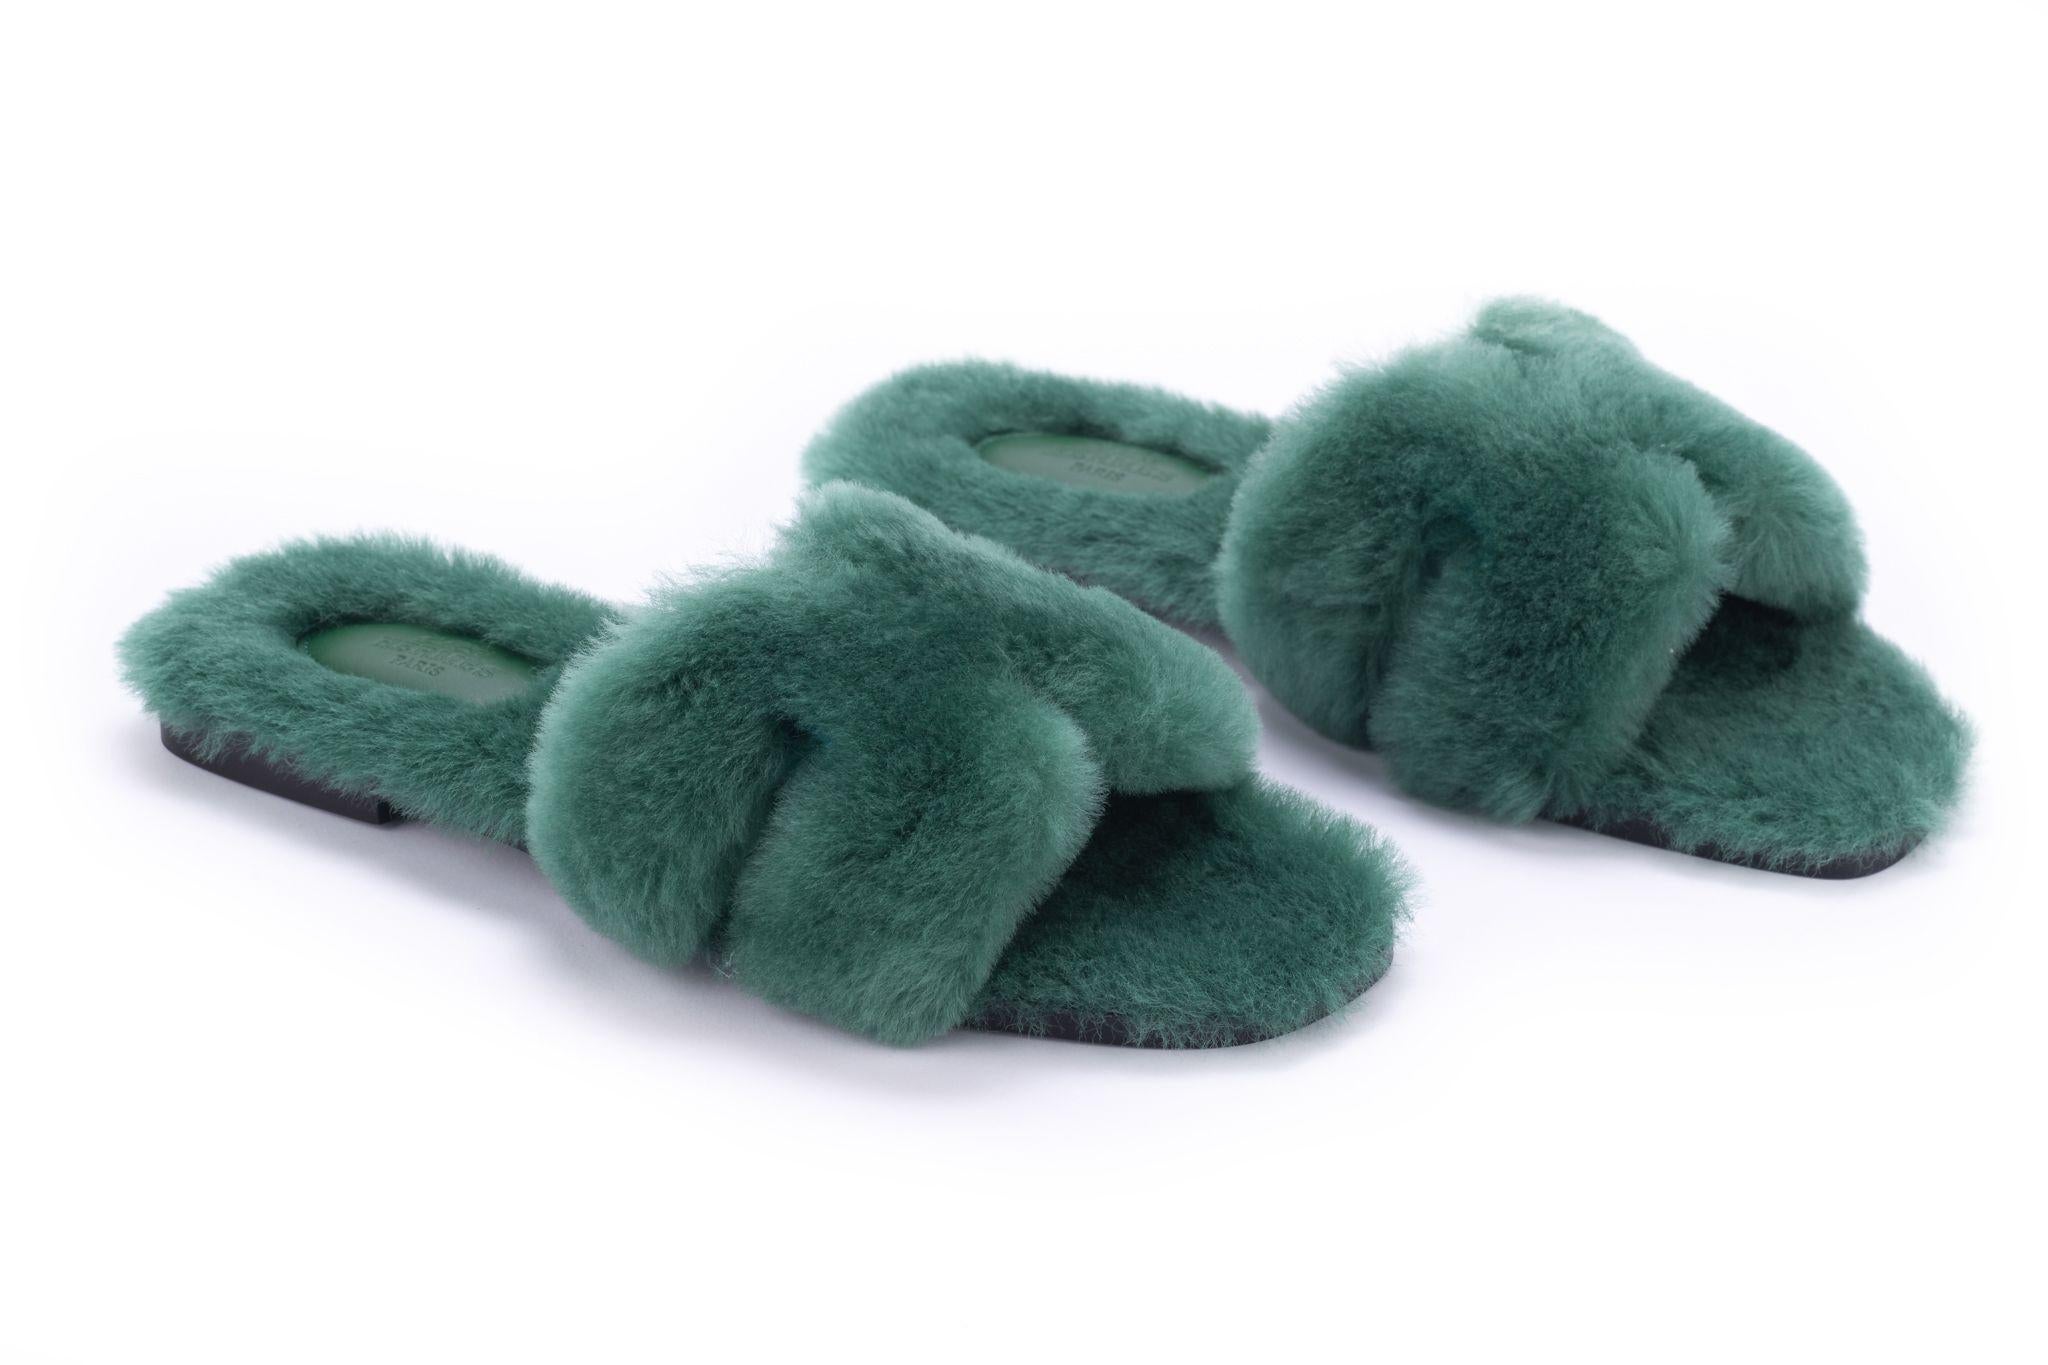 Sandales Hermès Oran en laine verte. Ils sont neufs et sont livrés avec la boîte et les housses d'origine. Taille EU 38 US 7.